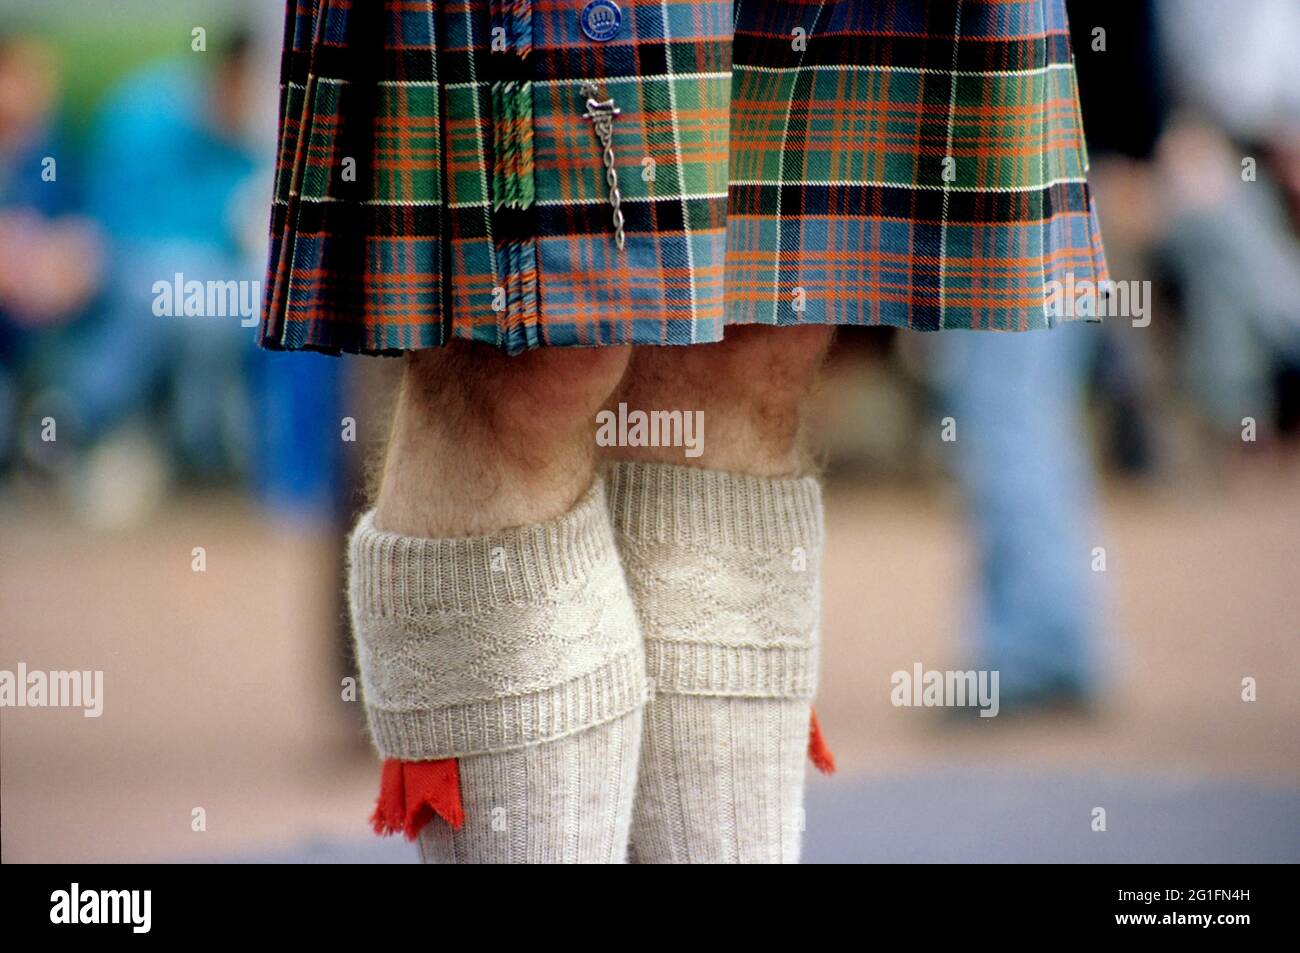 Kilt, kilt, tartan, genou, chaussettes de genou avec sangles ornementales, jarretière, ceinture de jarretière, Glasgow, Écosse, Grande-Bretagne Banque D'Images